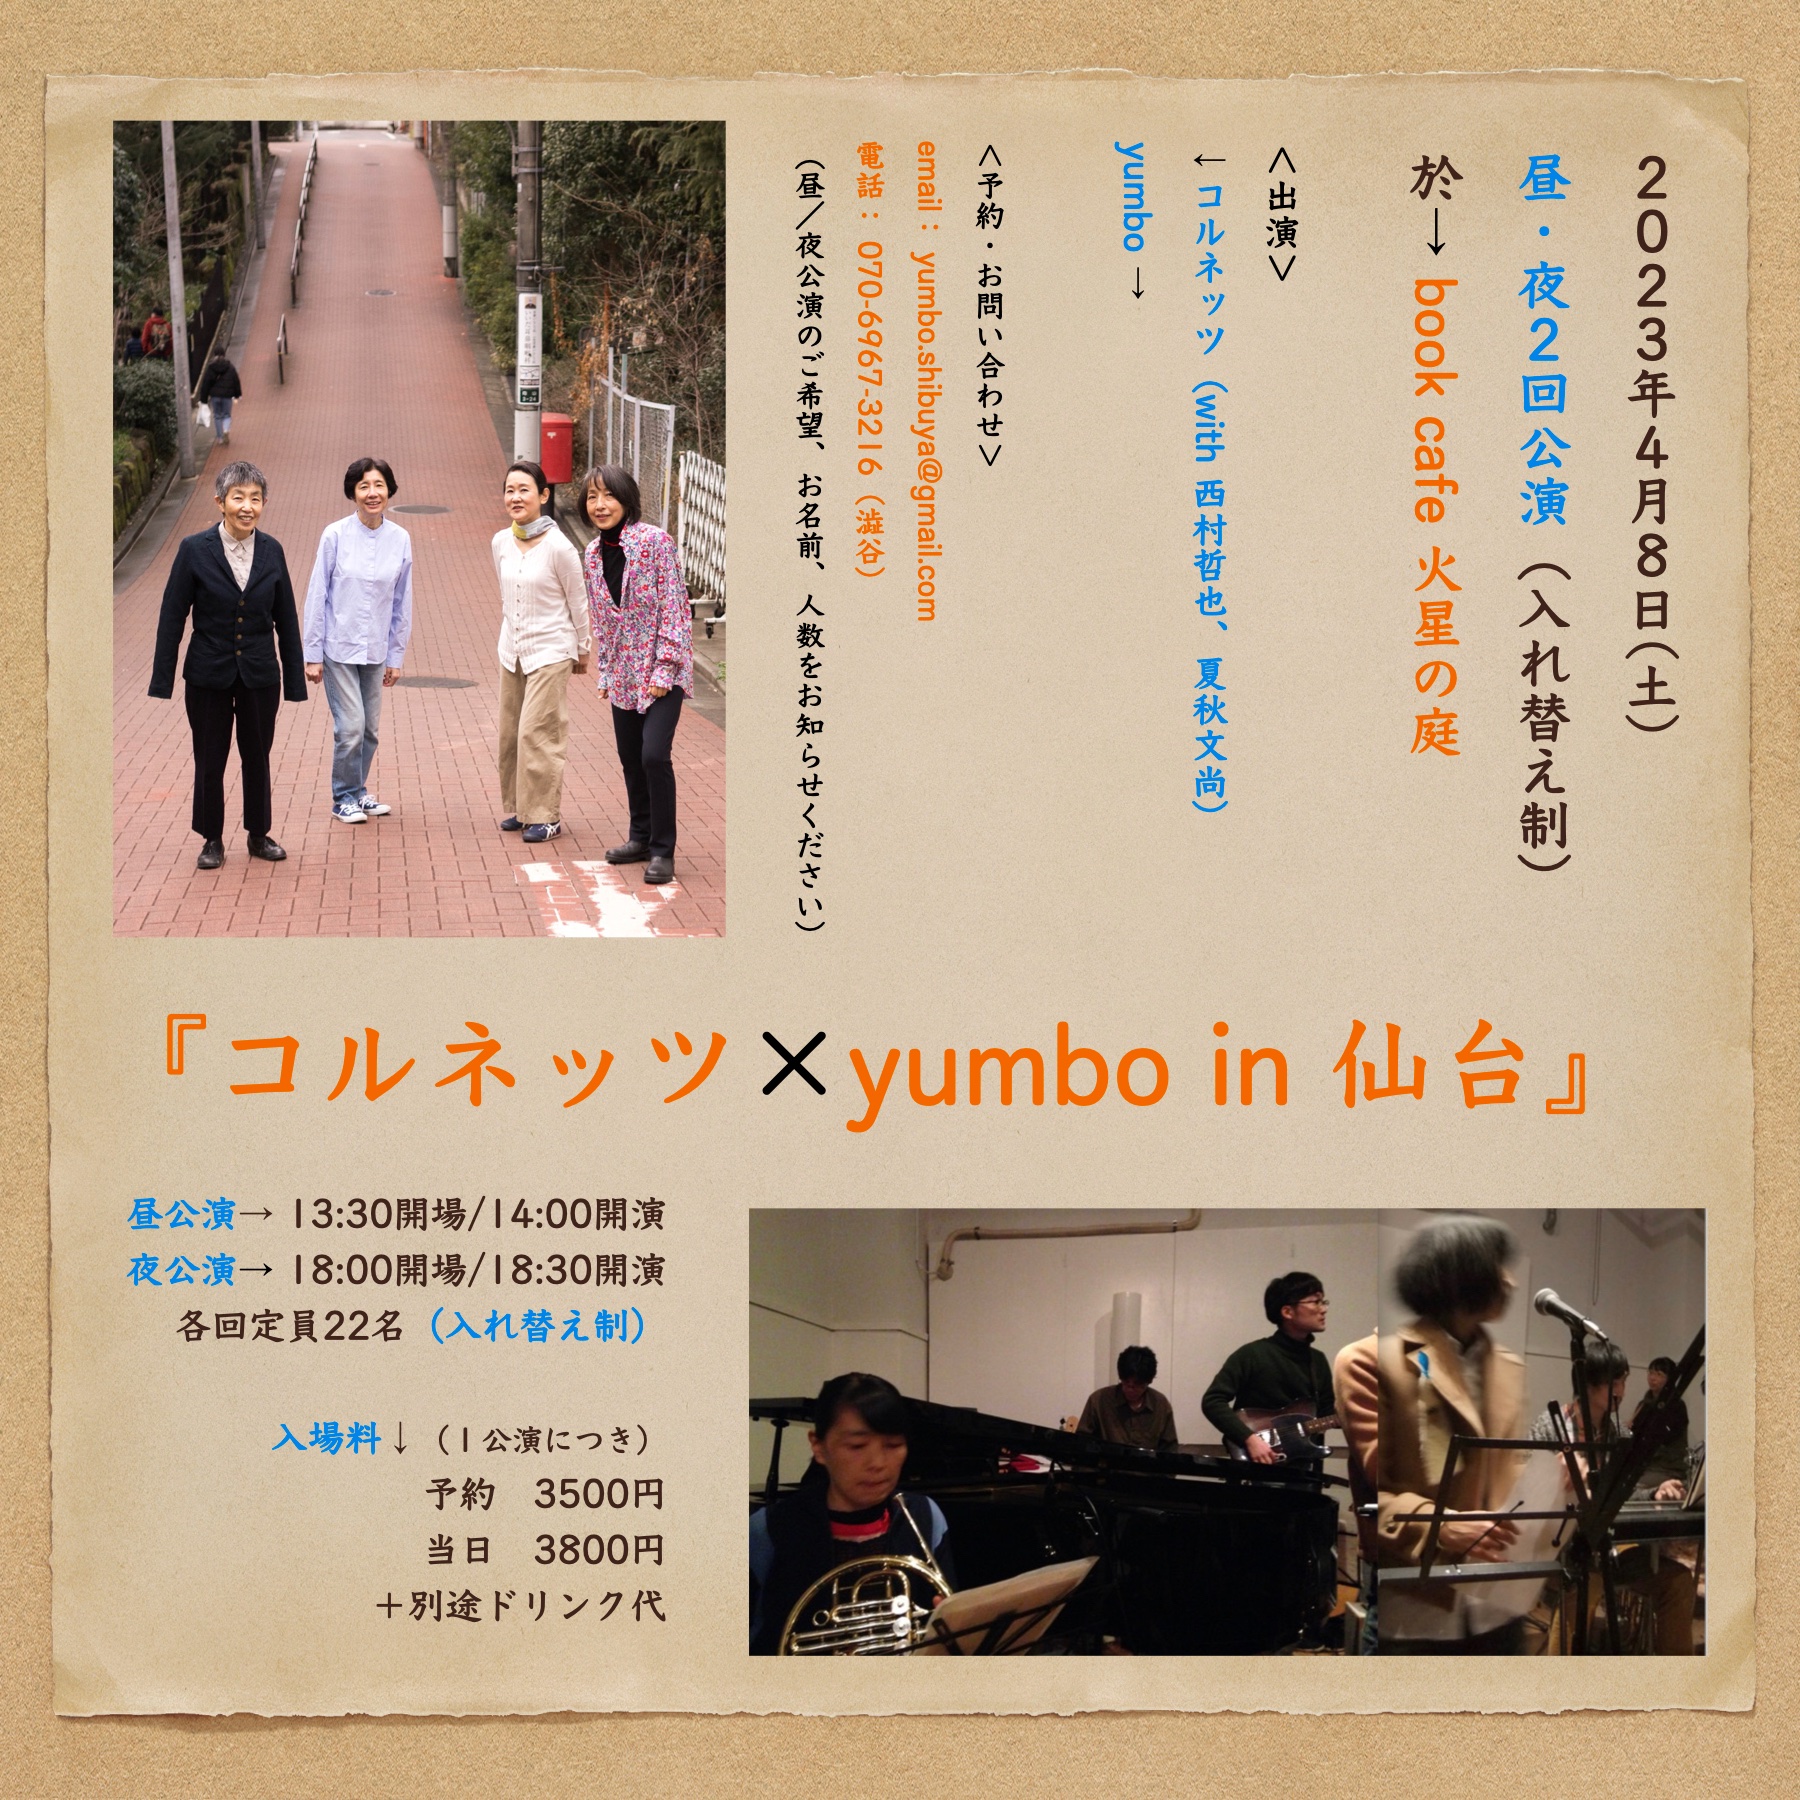 『コルネッツ × yumbo in 仙台』  